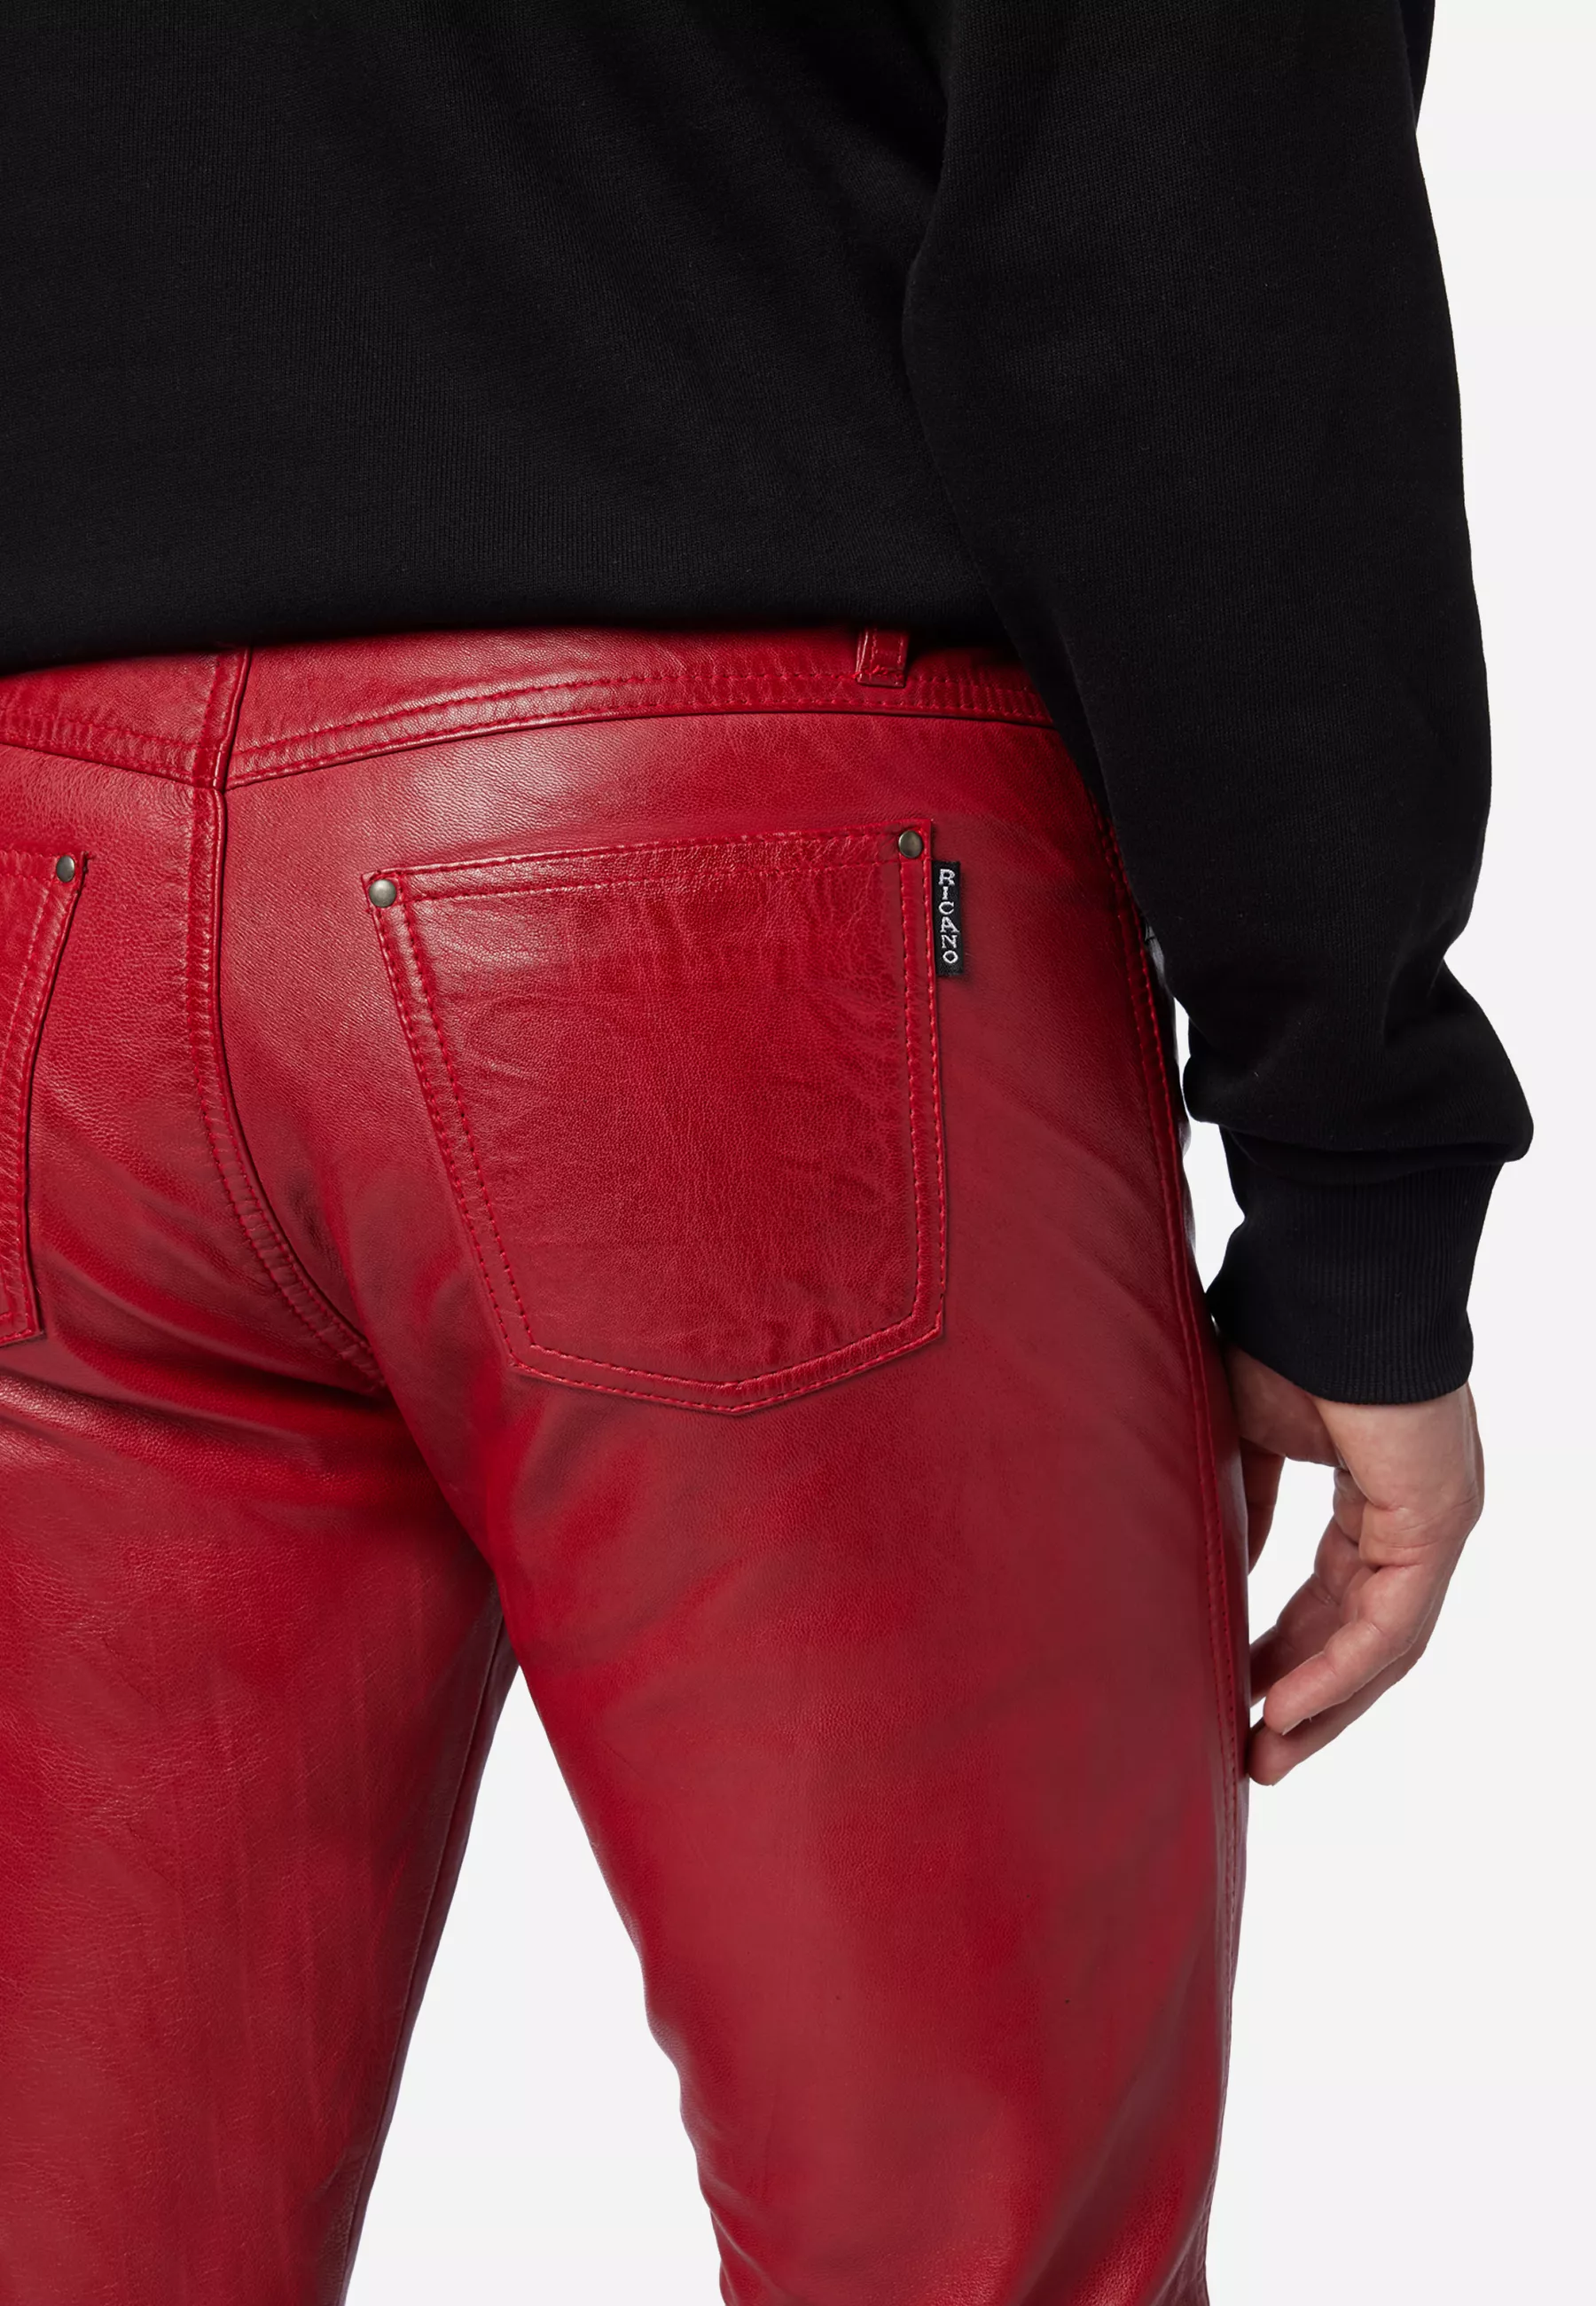 Herren Lederhose Slim Fit in Rot von Ricano, Detailansicht vom Five Pocket Look am Model